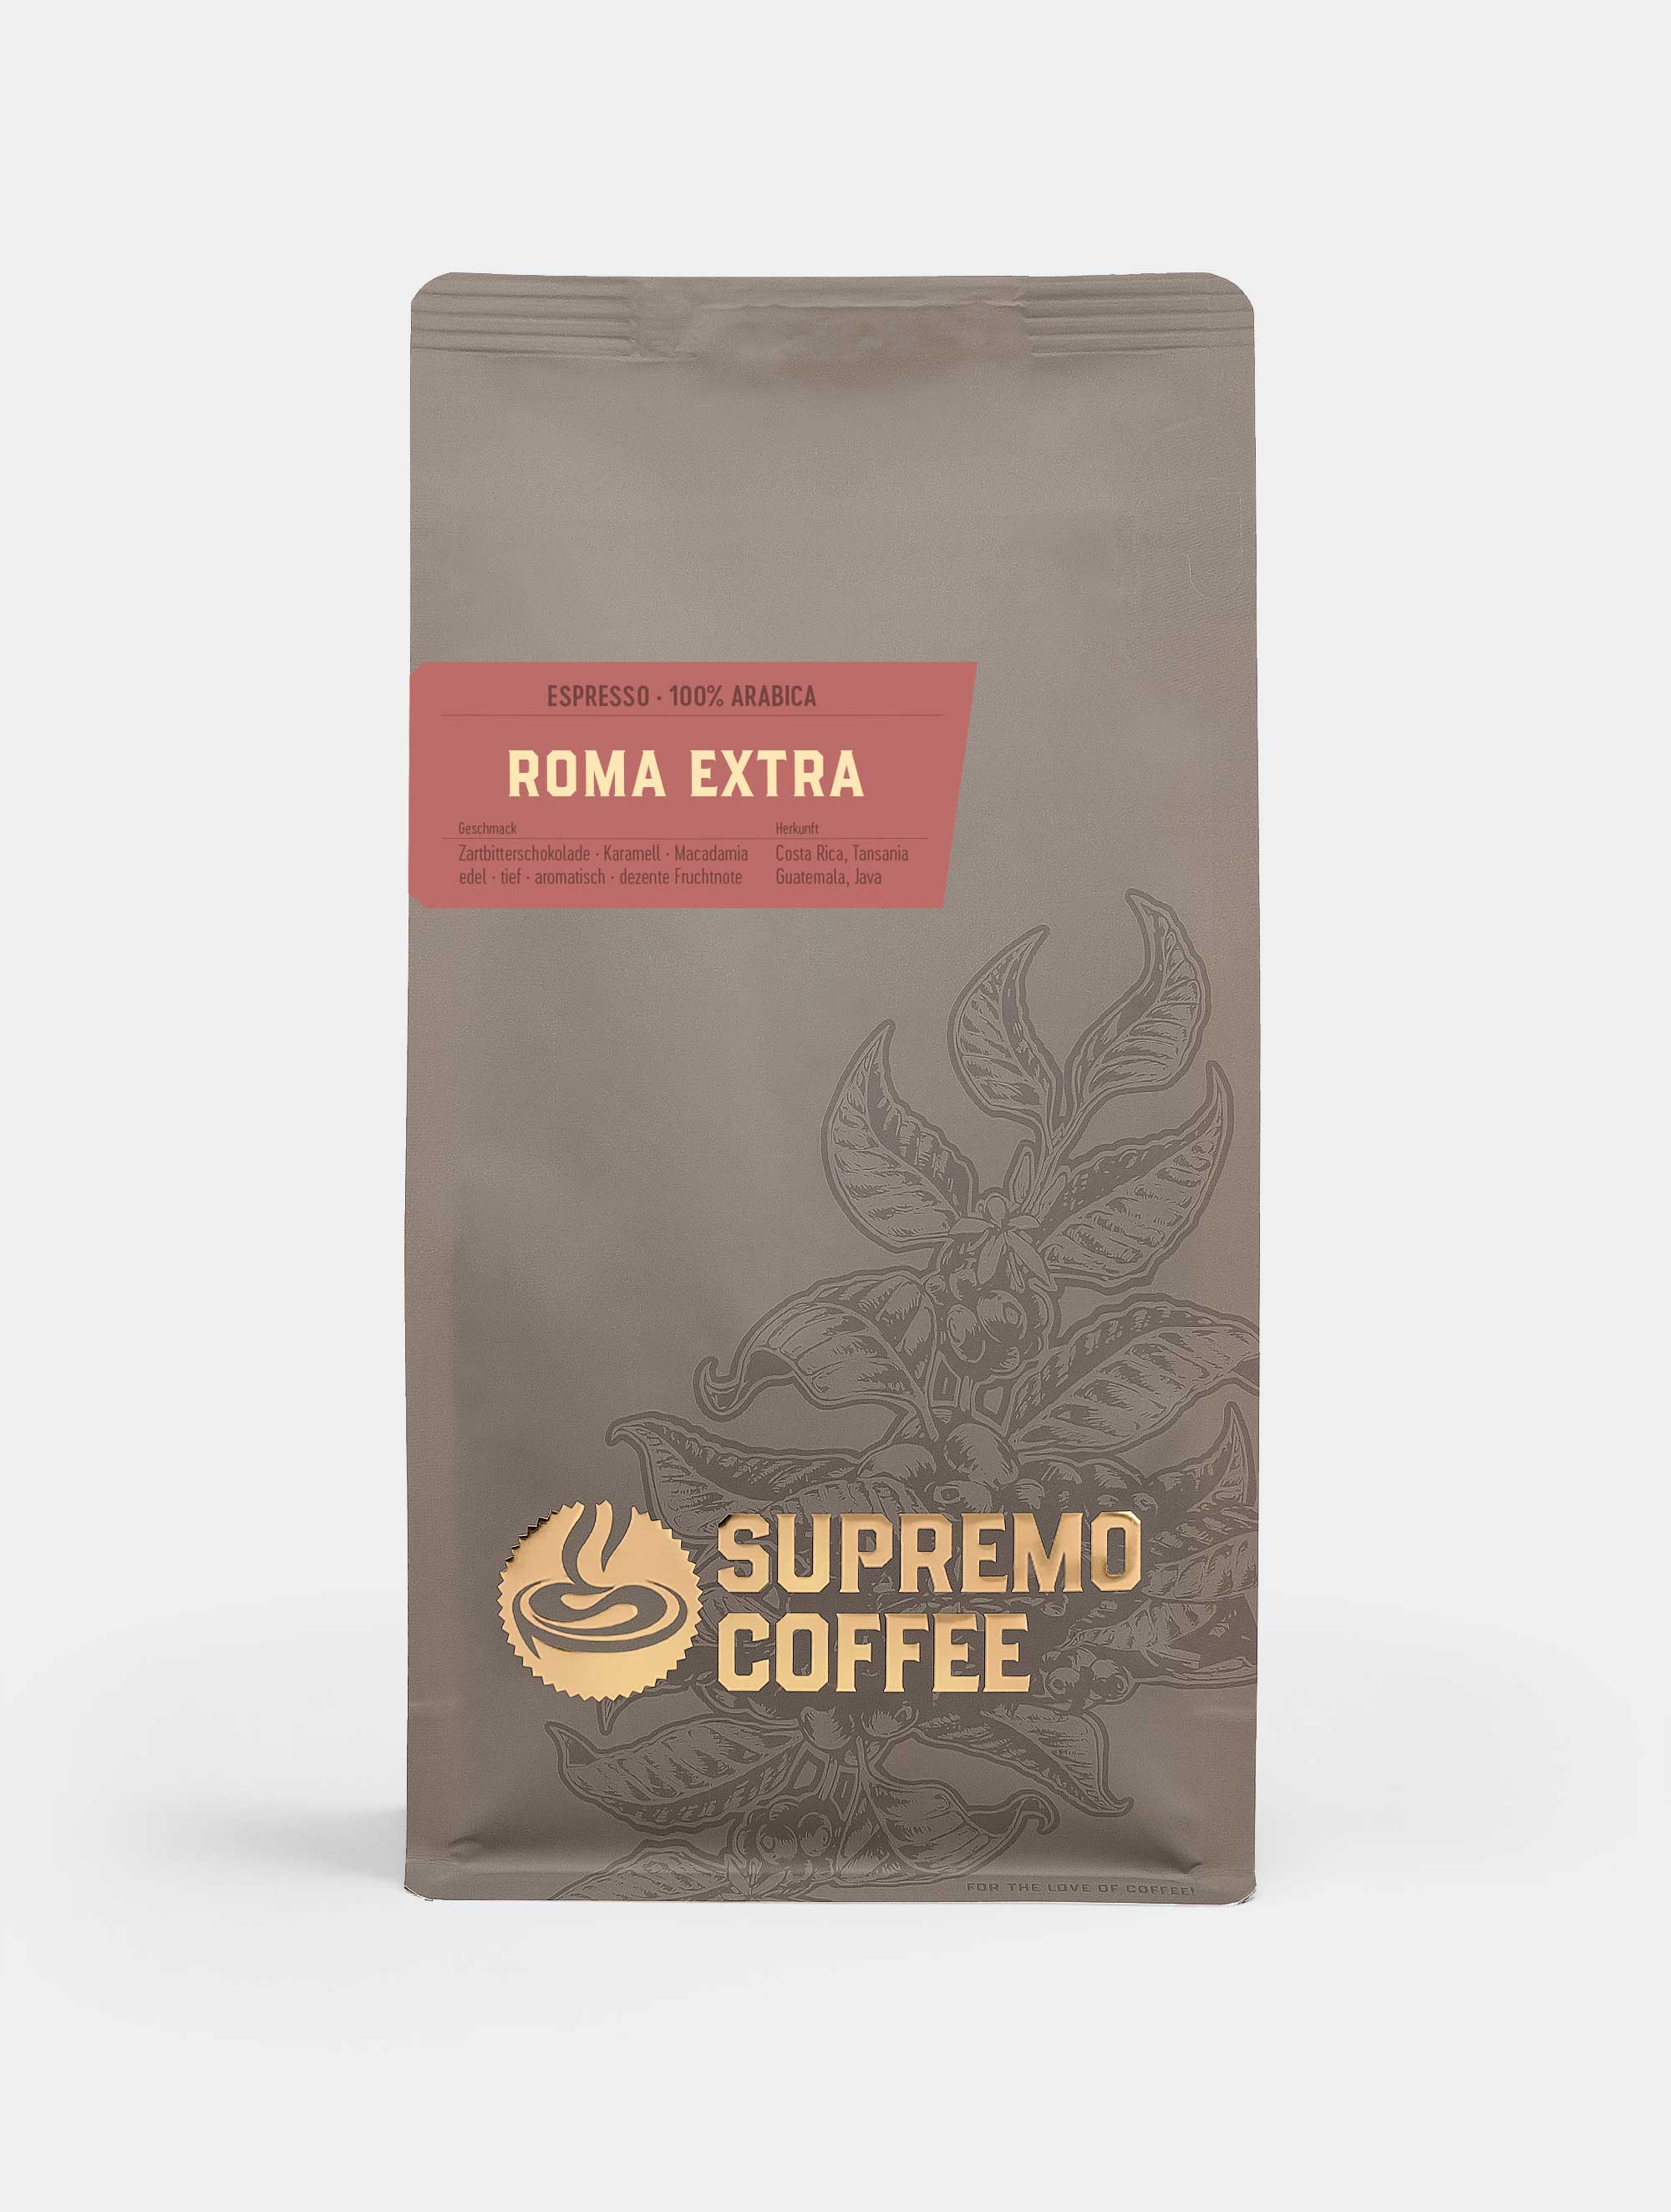 Roma Extra, Espresso 100% Arabica | SUPREMO Coffee